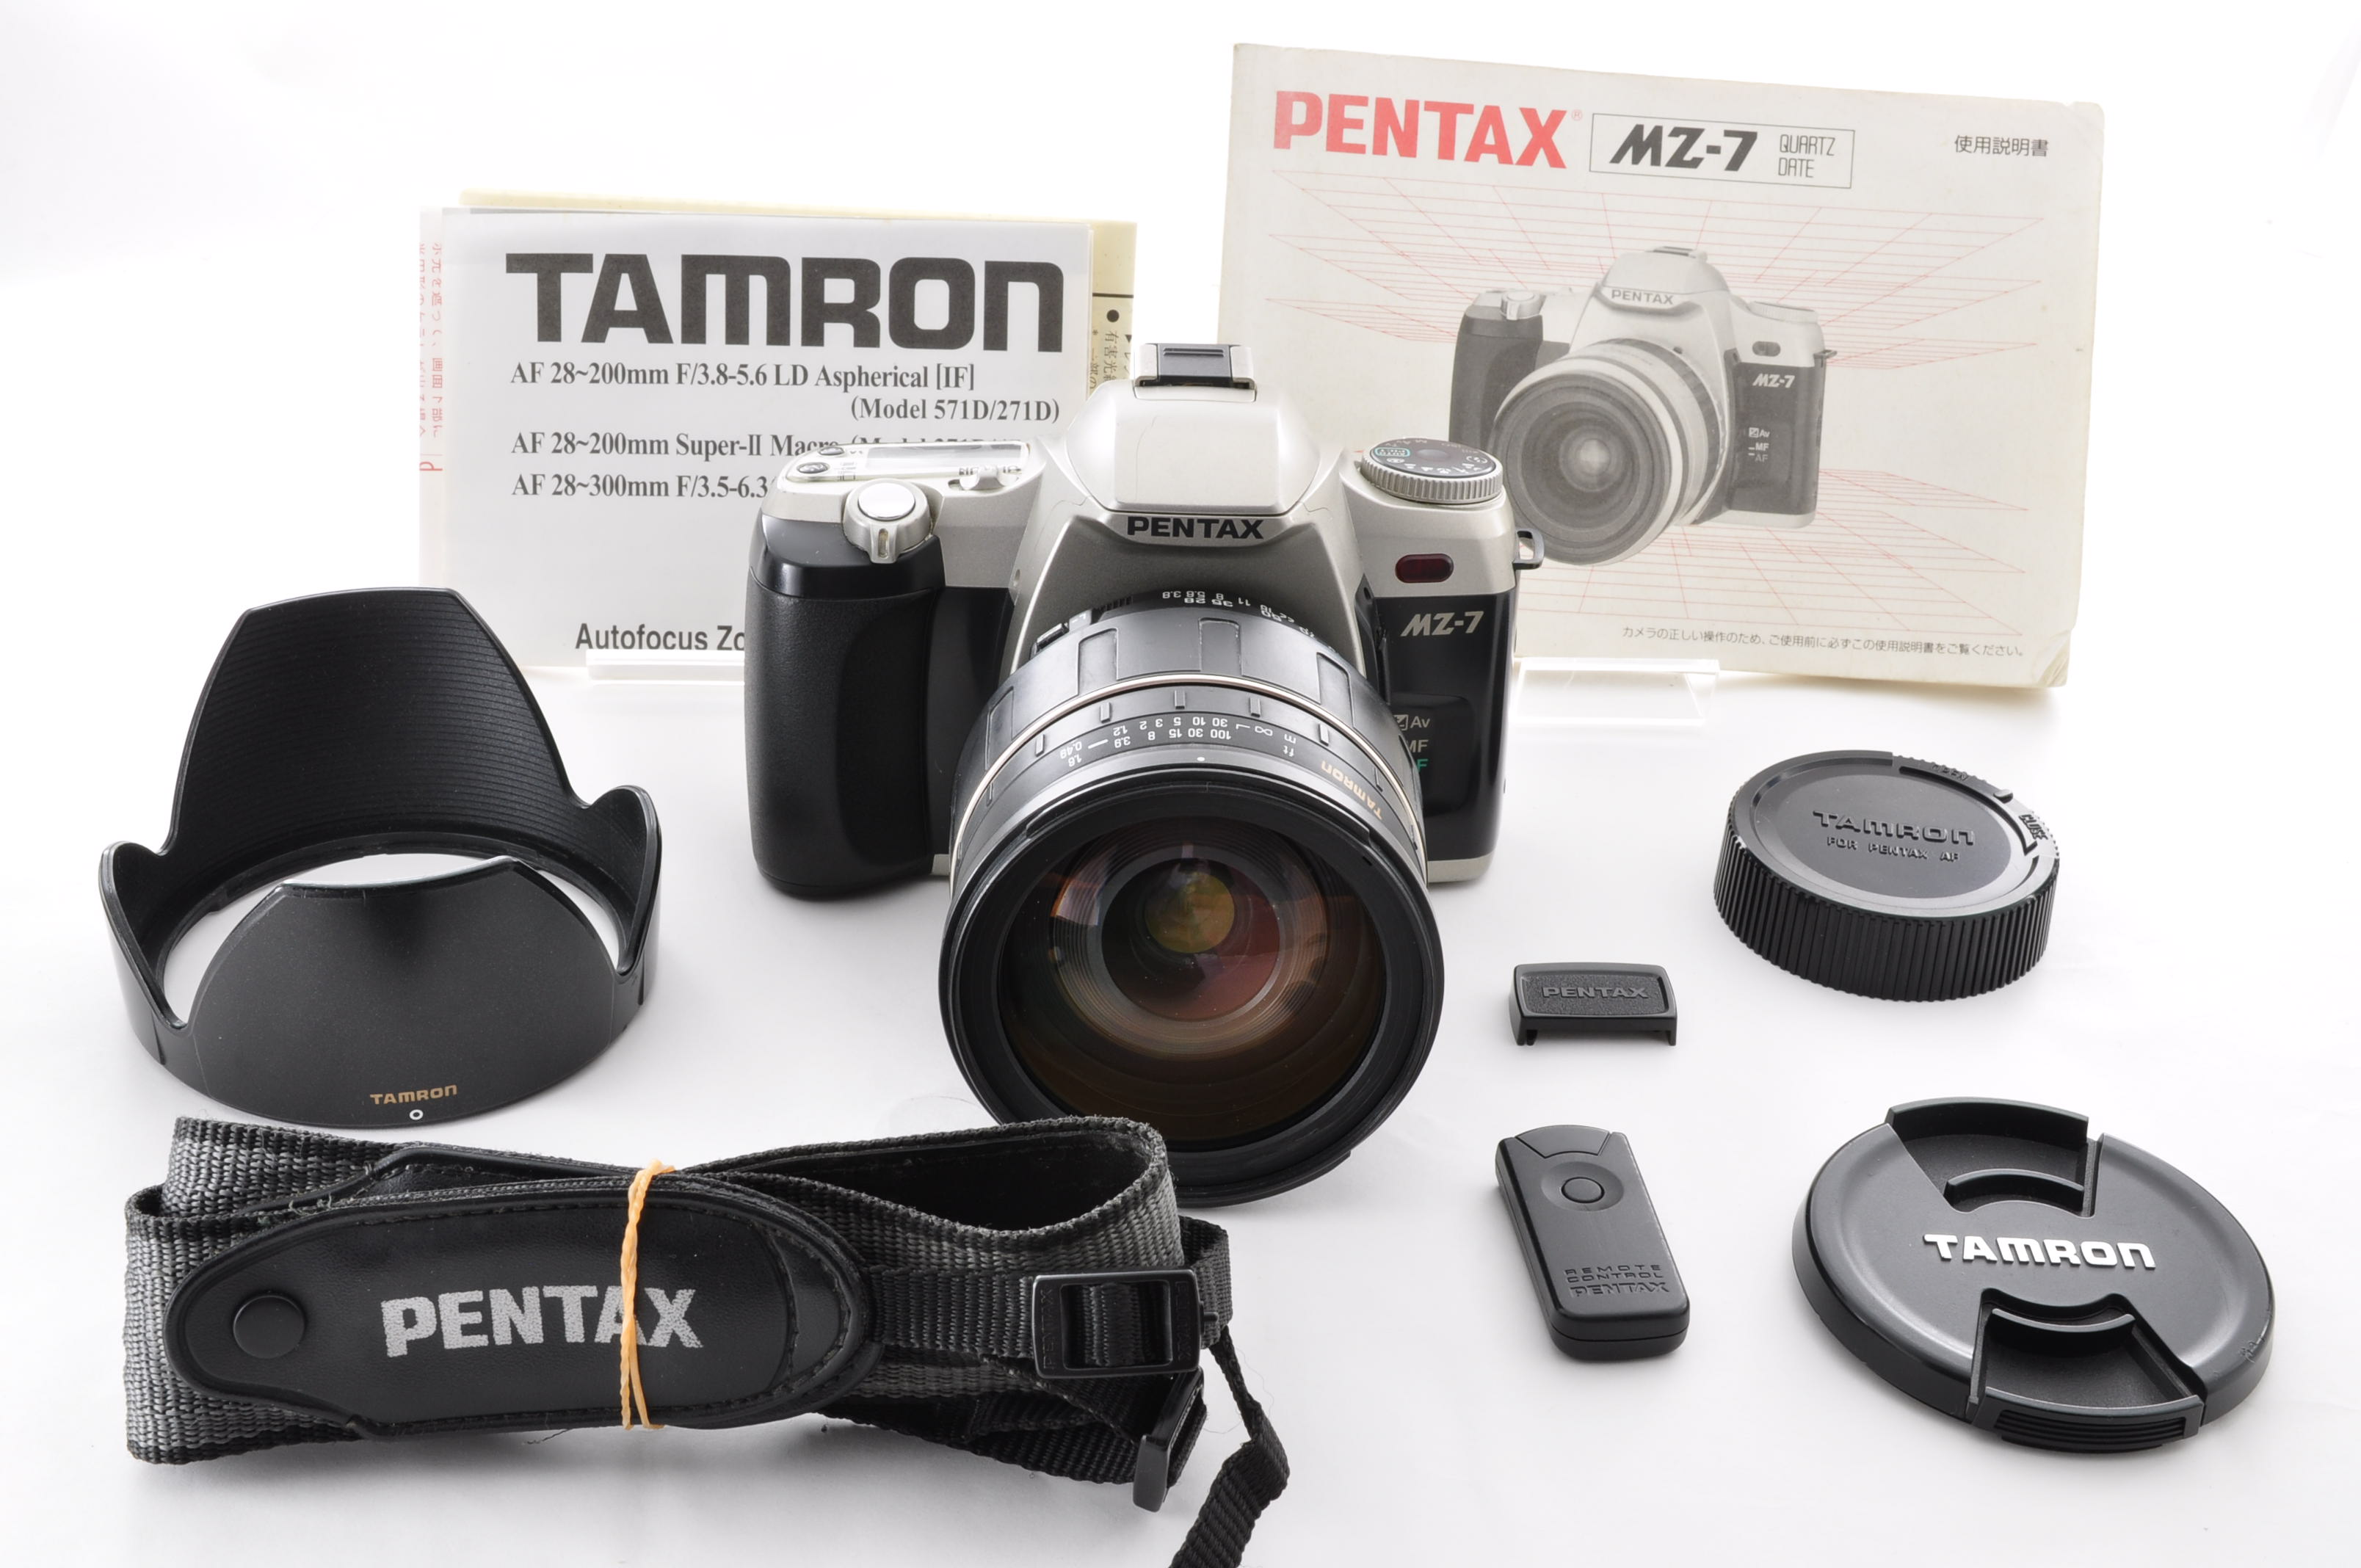 PENTAX MZ-7 35mm Film Camera [Near Mint] + Tamron 28-200mm F3.5-5.6 From Japan img23